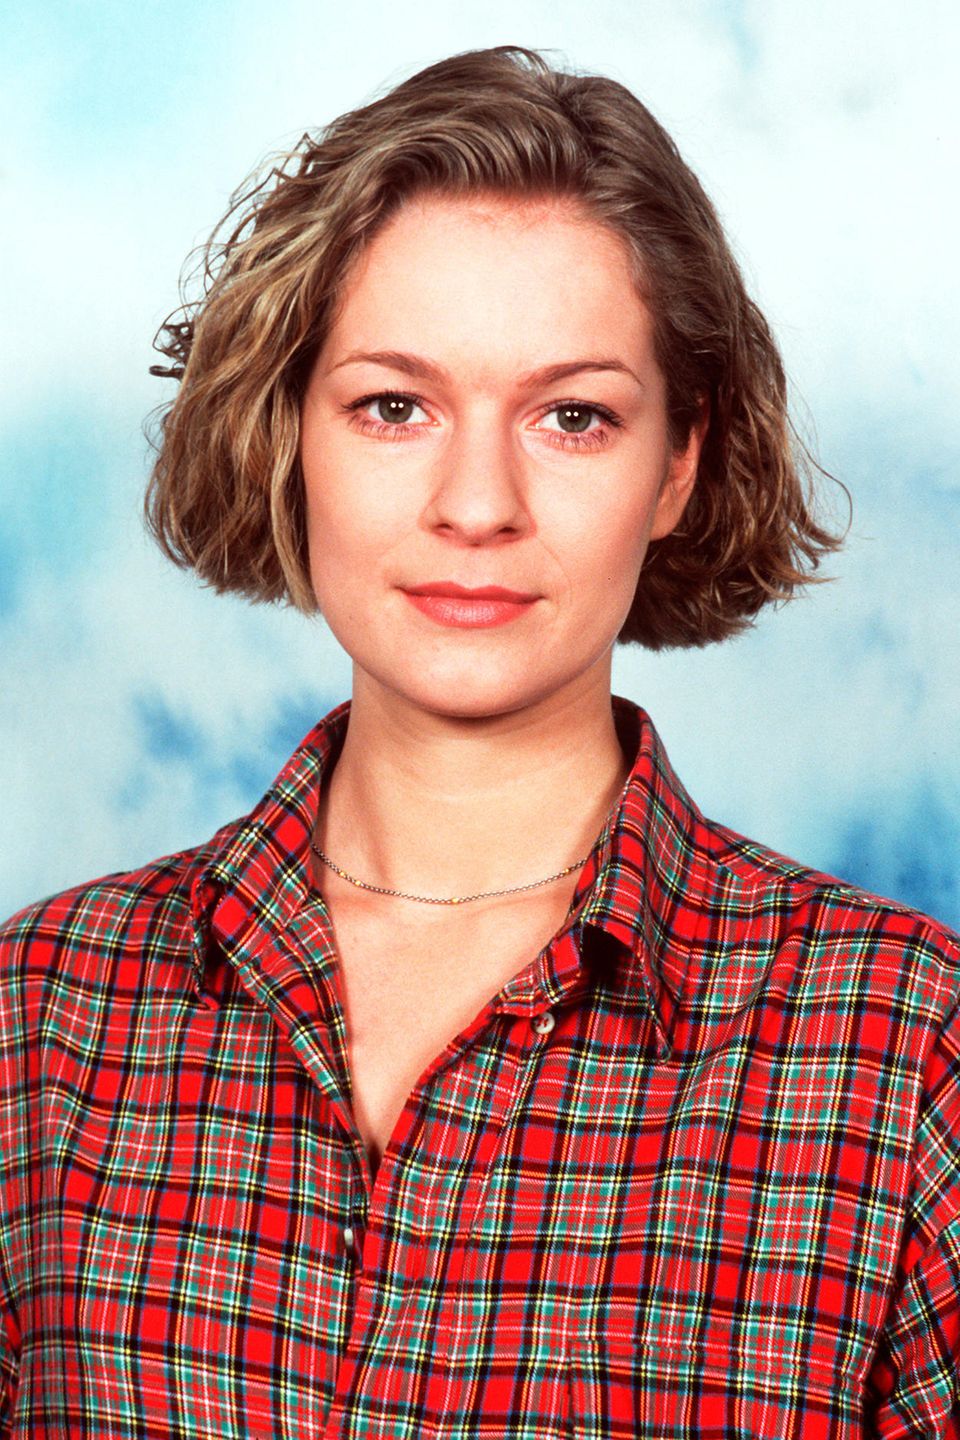 Lisa Wittich wird am 11. Februar 1972 als Tochter eines Architekten in Stuttgart geboren. Schon früh entdeckt sie ihre Leidenschaft für die Schauspielerei. Von 1993-1997 absolviert sie eine Schauspielausbildung Hochschule für Musik und Theater in Hamburg. Am Thalia Theater kann sie erste Bühnenluft schnuppern. 